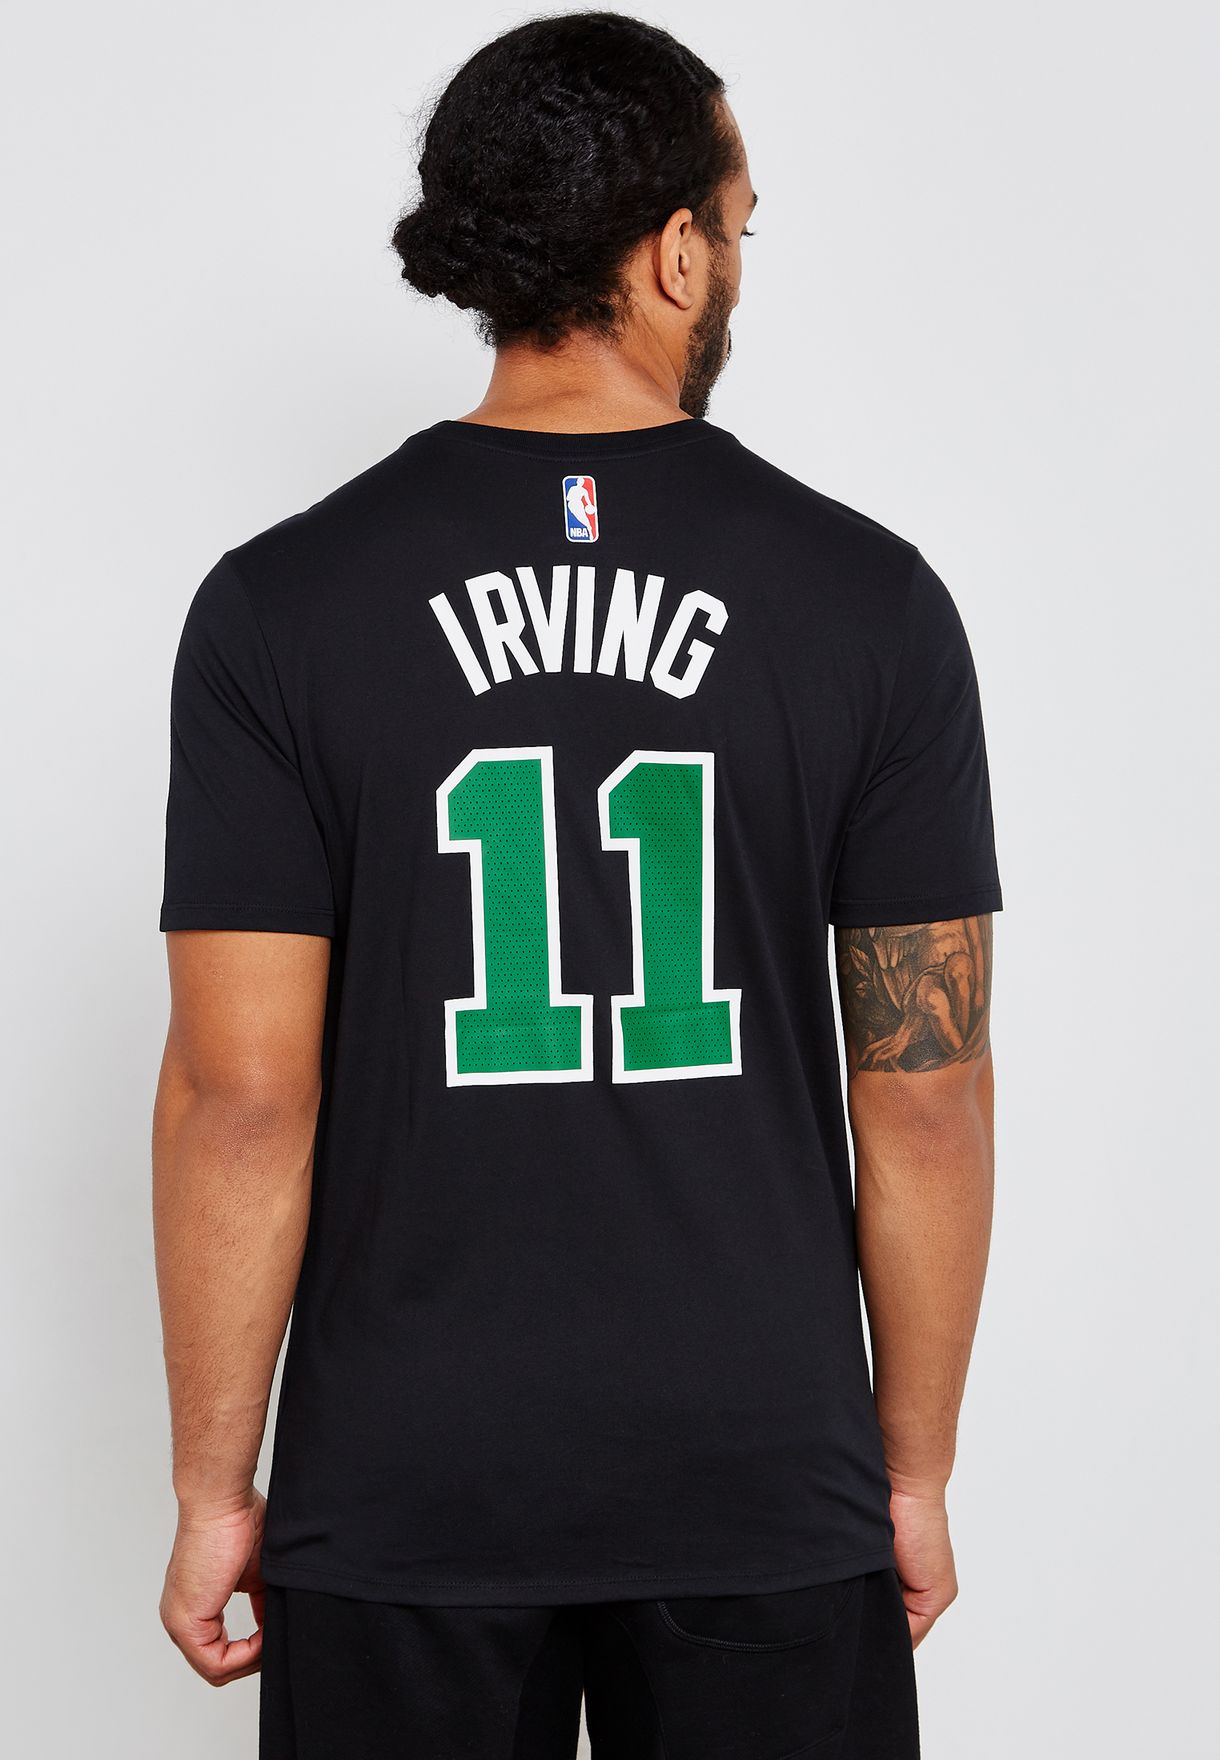 Boston Celtics Kyrie Irving Uomo Jersey T-shirt Maniche Corte Basket in esecuzione di formazione Maglietta 